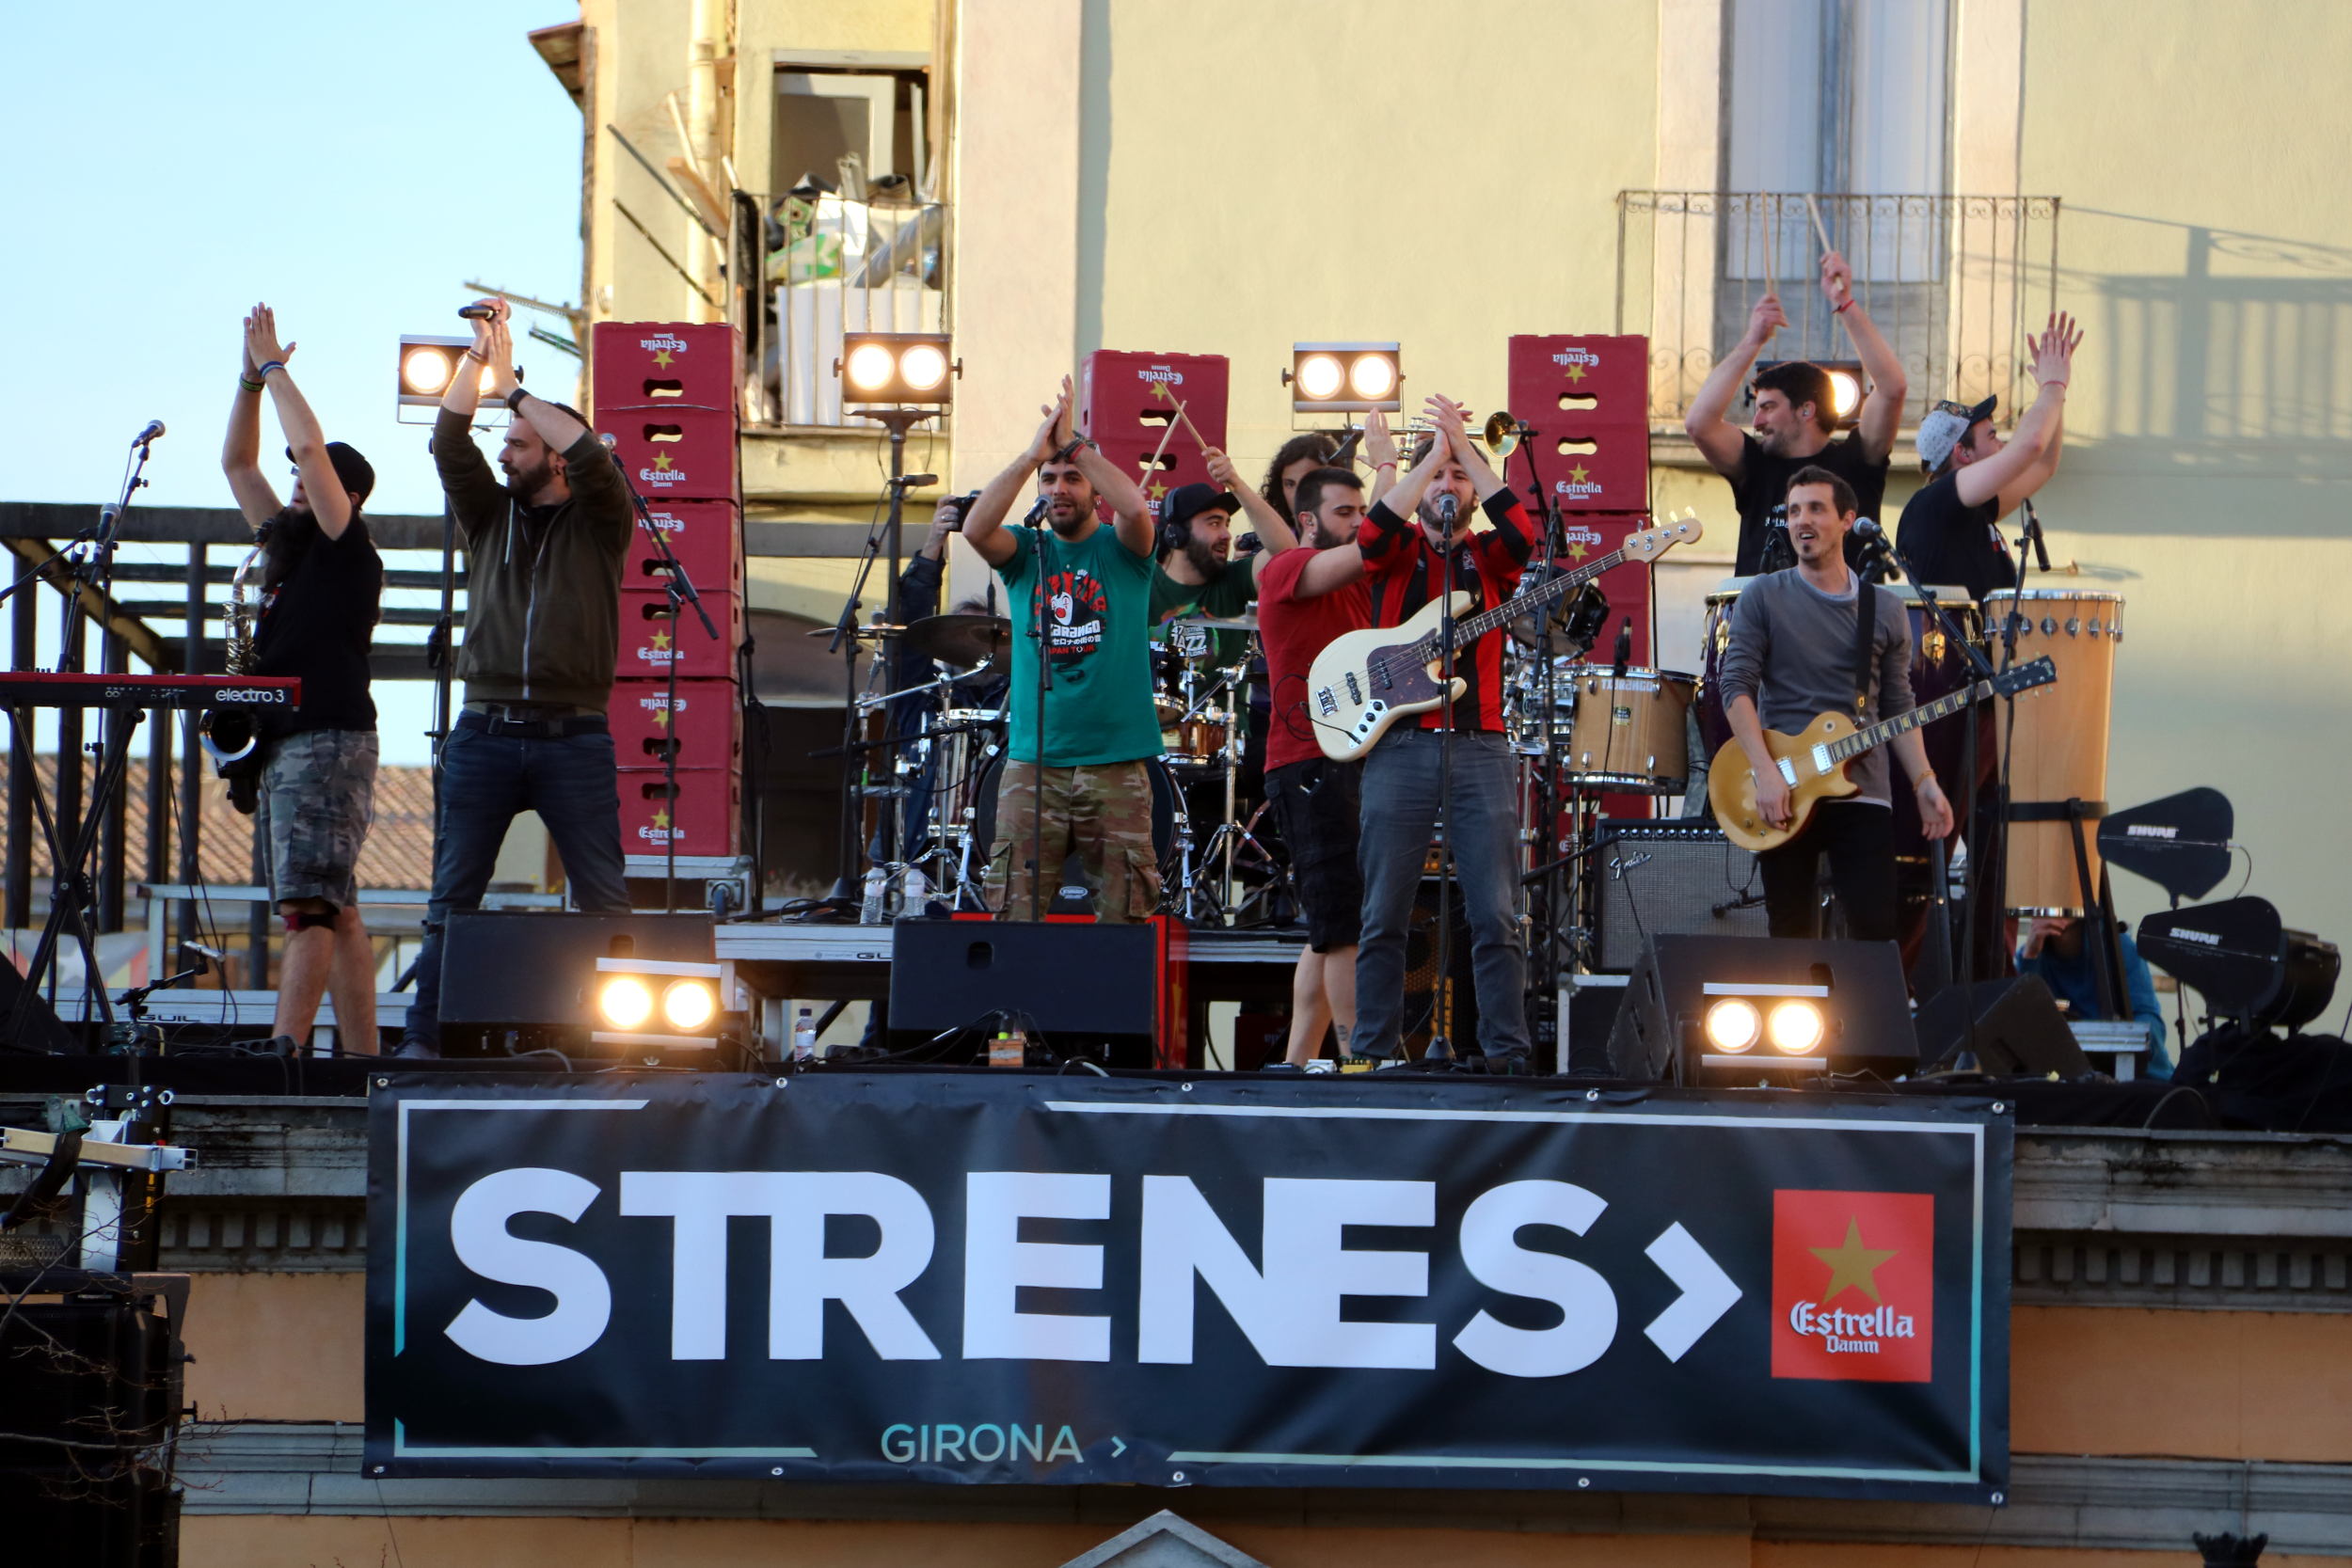 Txarango inauguran el Festival Strenes de Girona con récord de asistencia